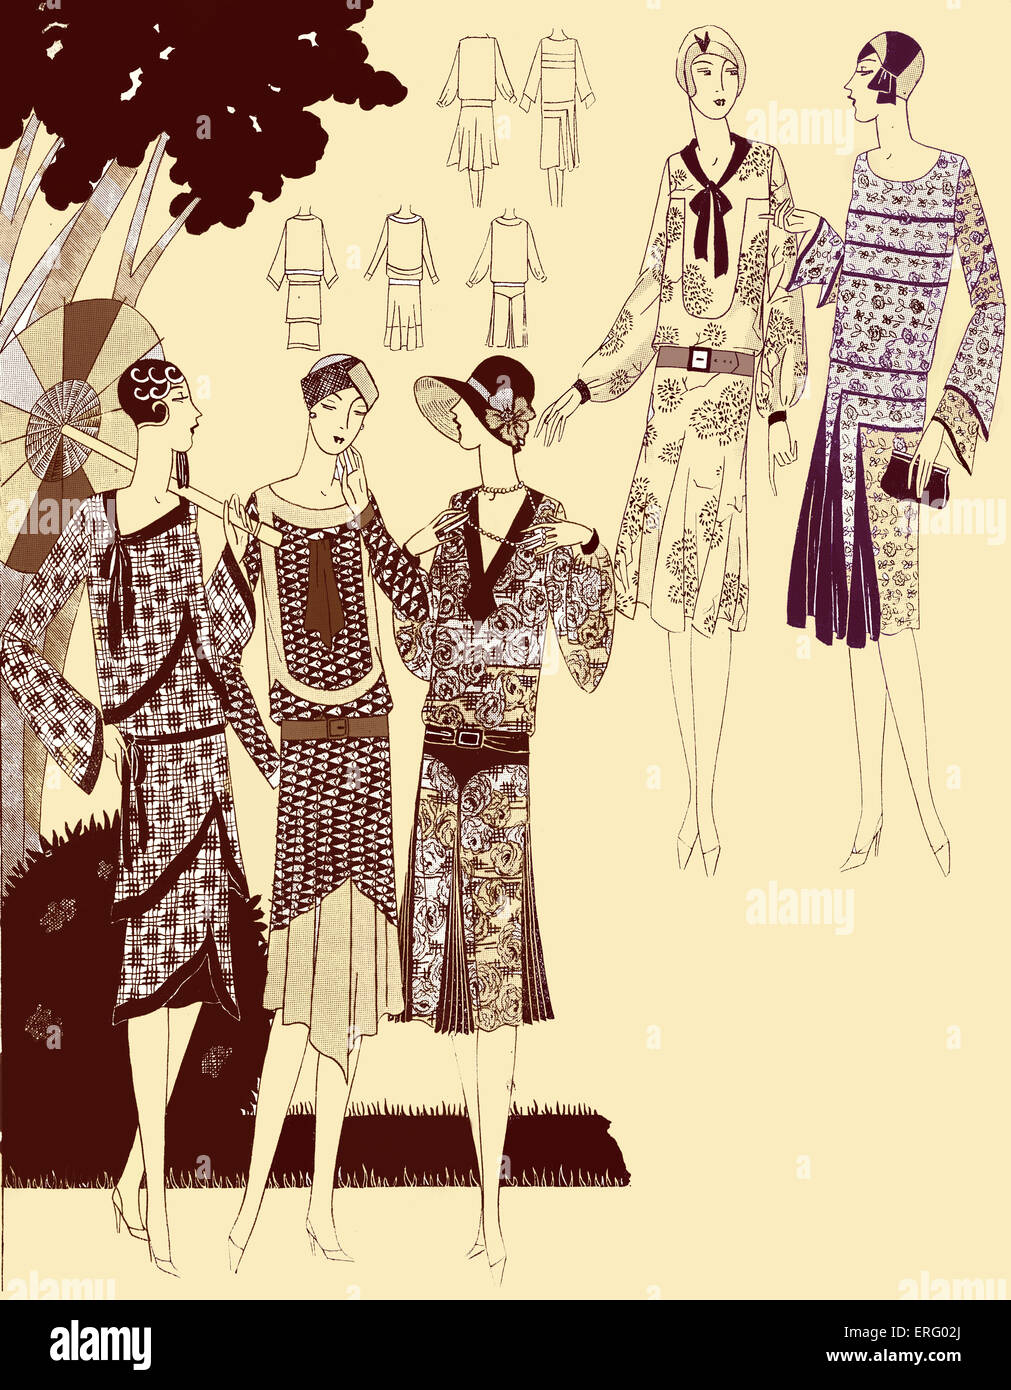 Robes fashion imprimé à la fin des années 1920. Faites de crêpe. Des plis, des chapeaux. Version colorisée. Banque D'Images